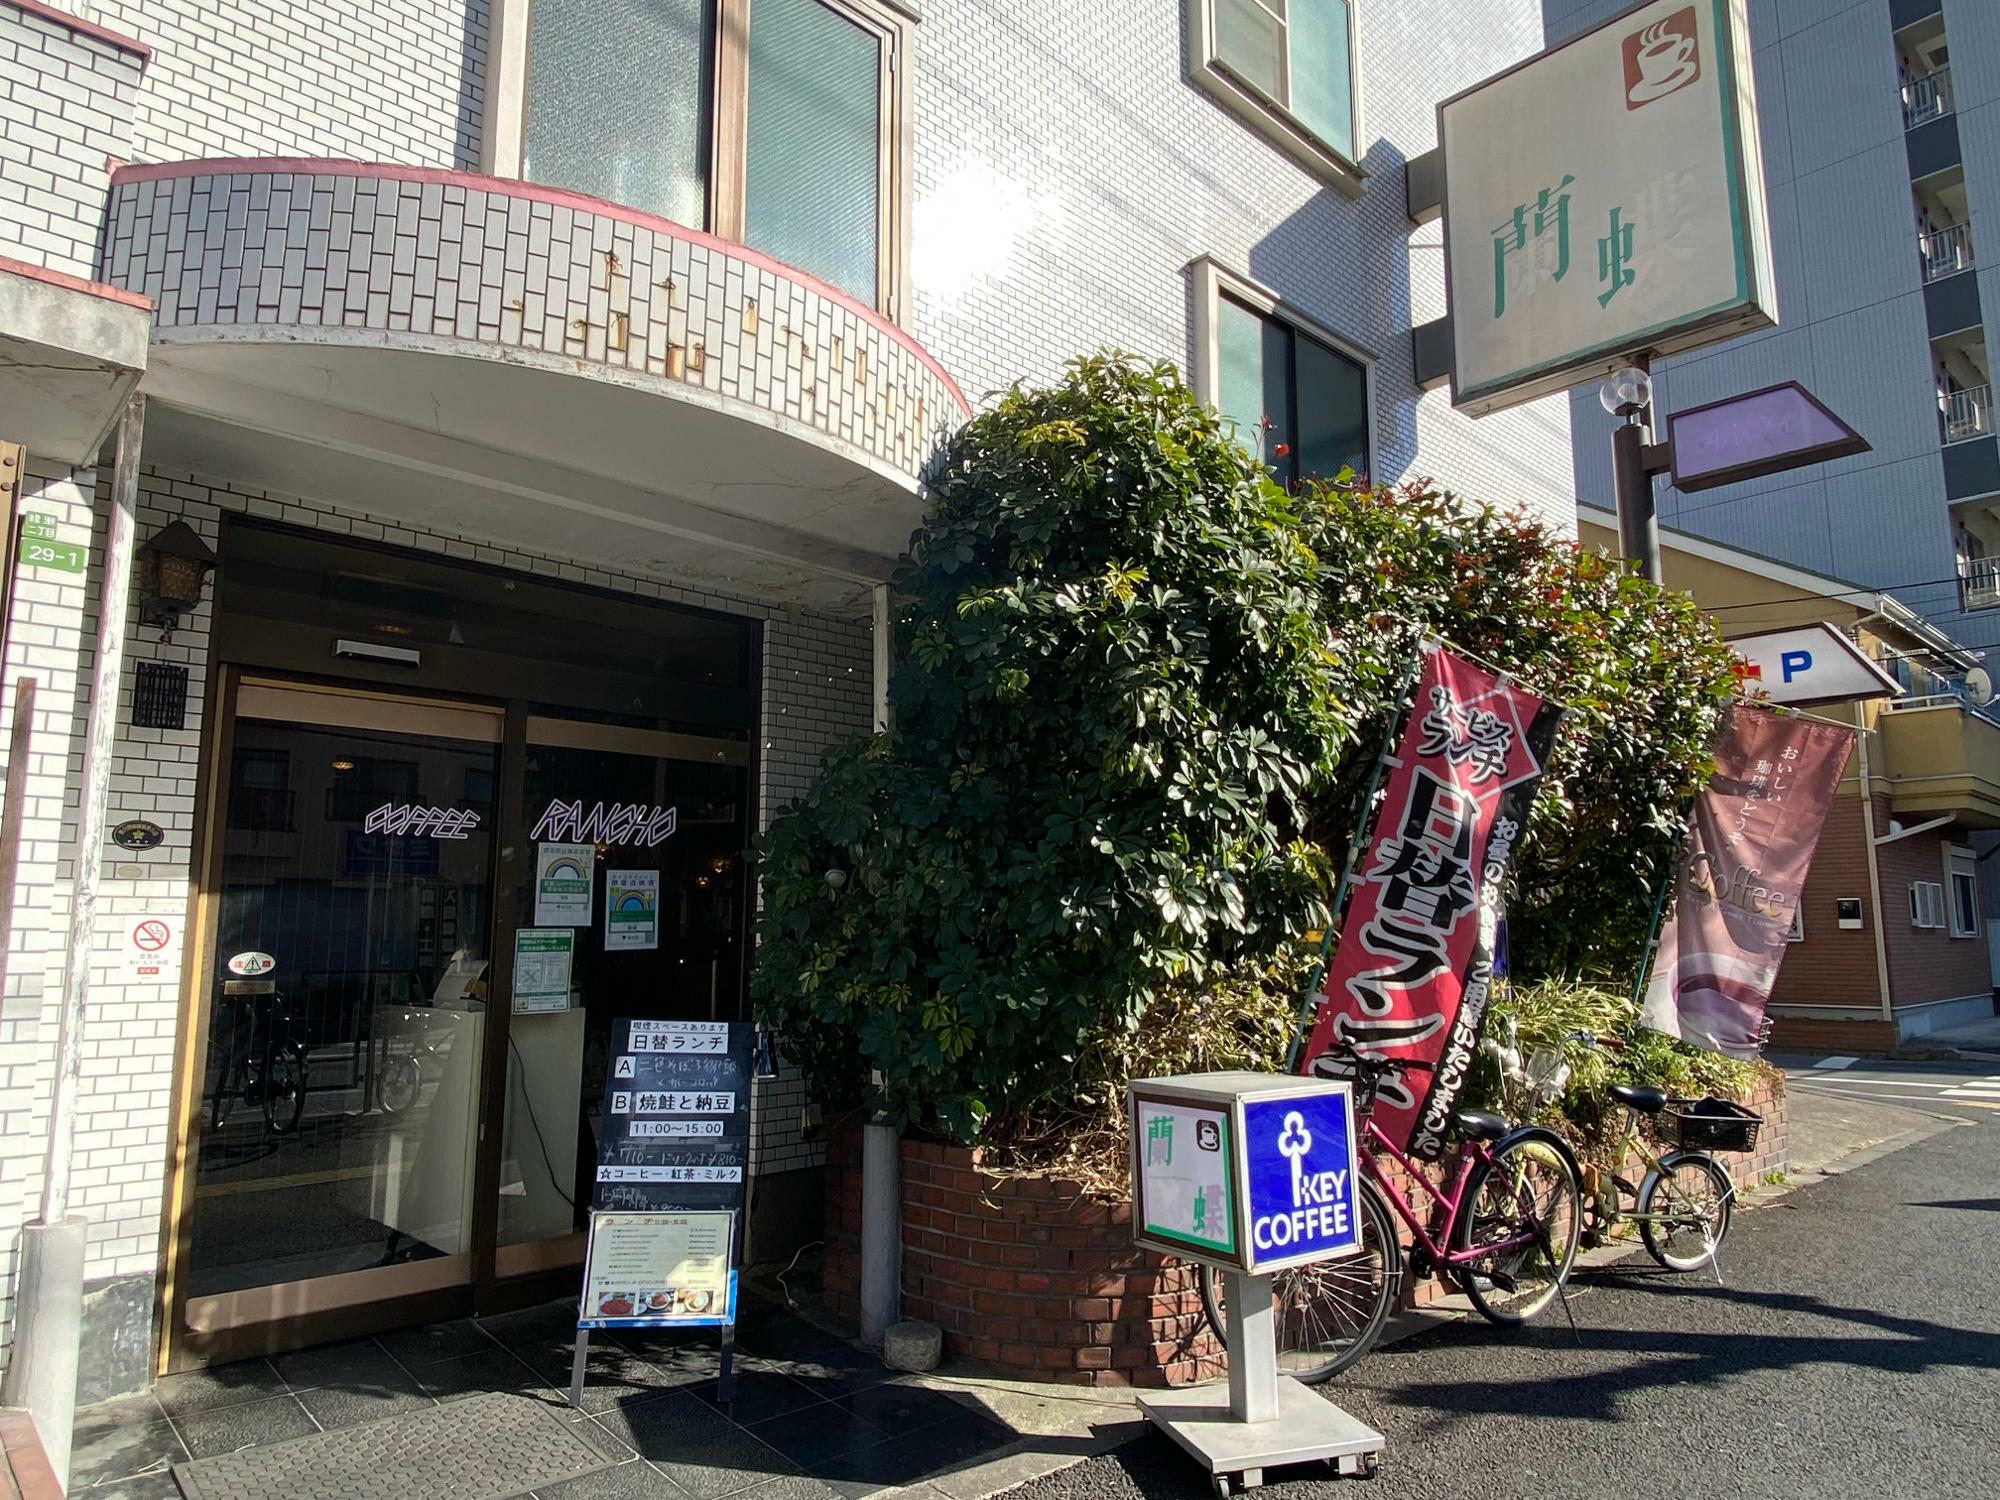 「綾瀬」駅から徒歩5分ほどの大通り沿いにある喫茶店「蘭蝶」